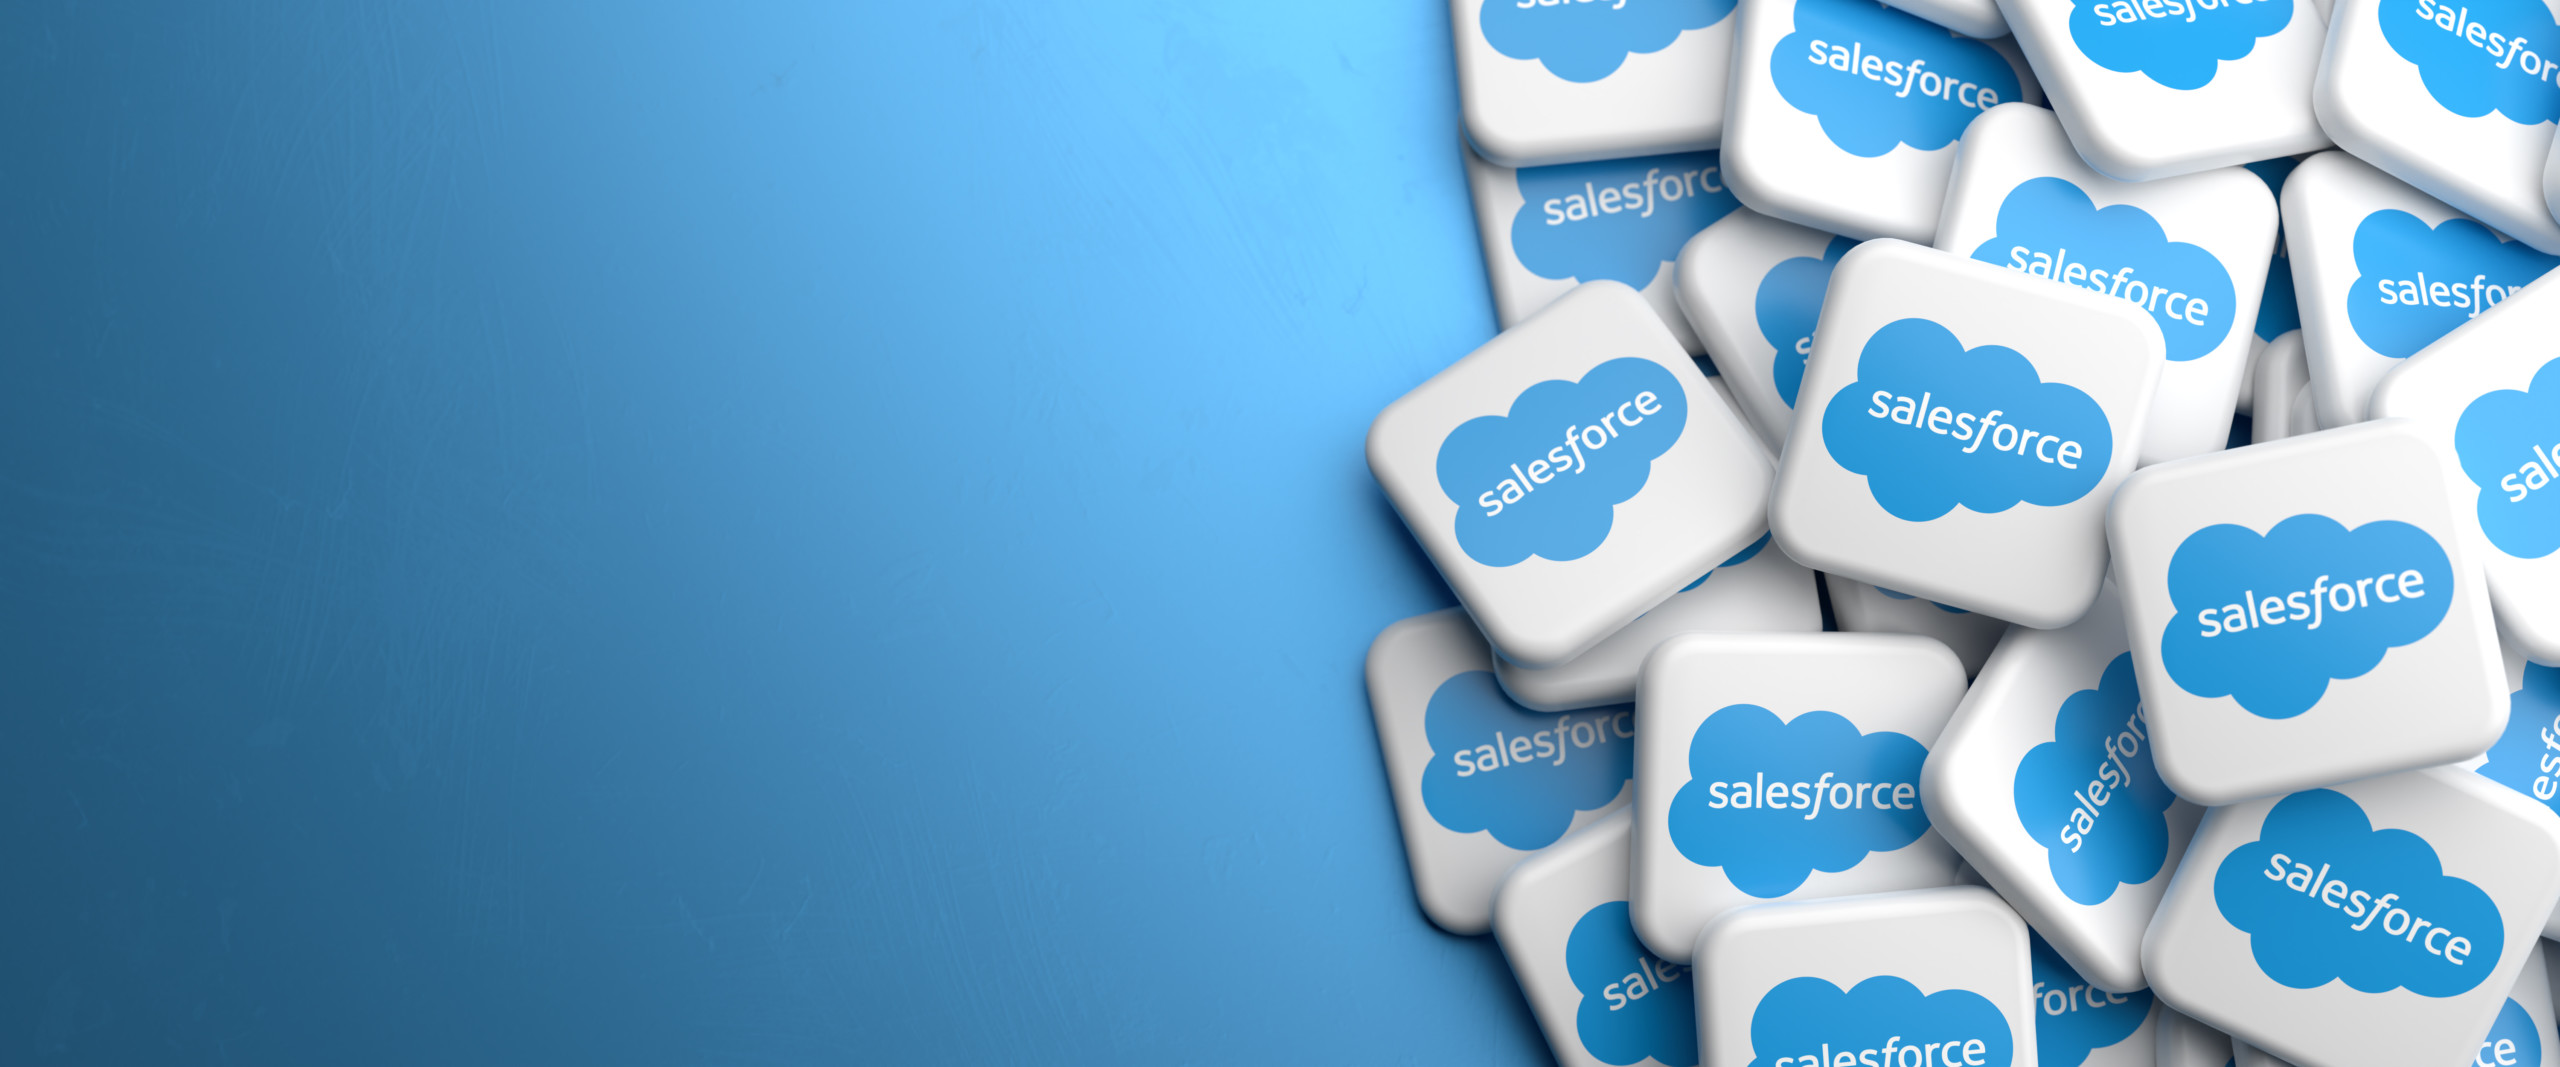 Elliott Management steigt mit Milliarden Investment bei Salesforce ein